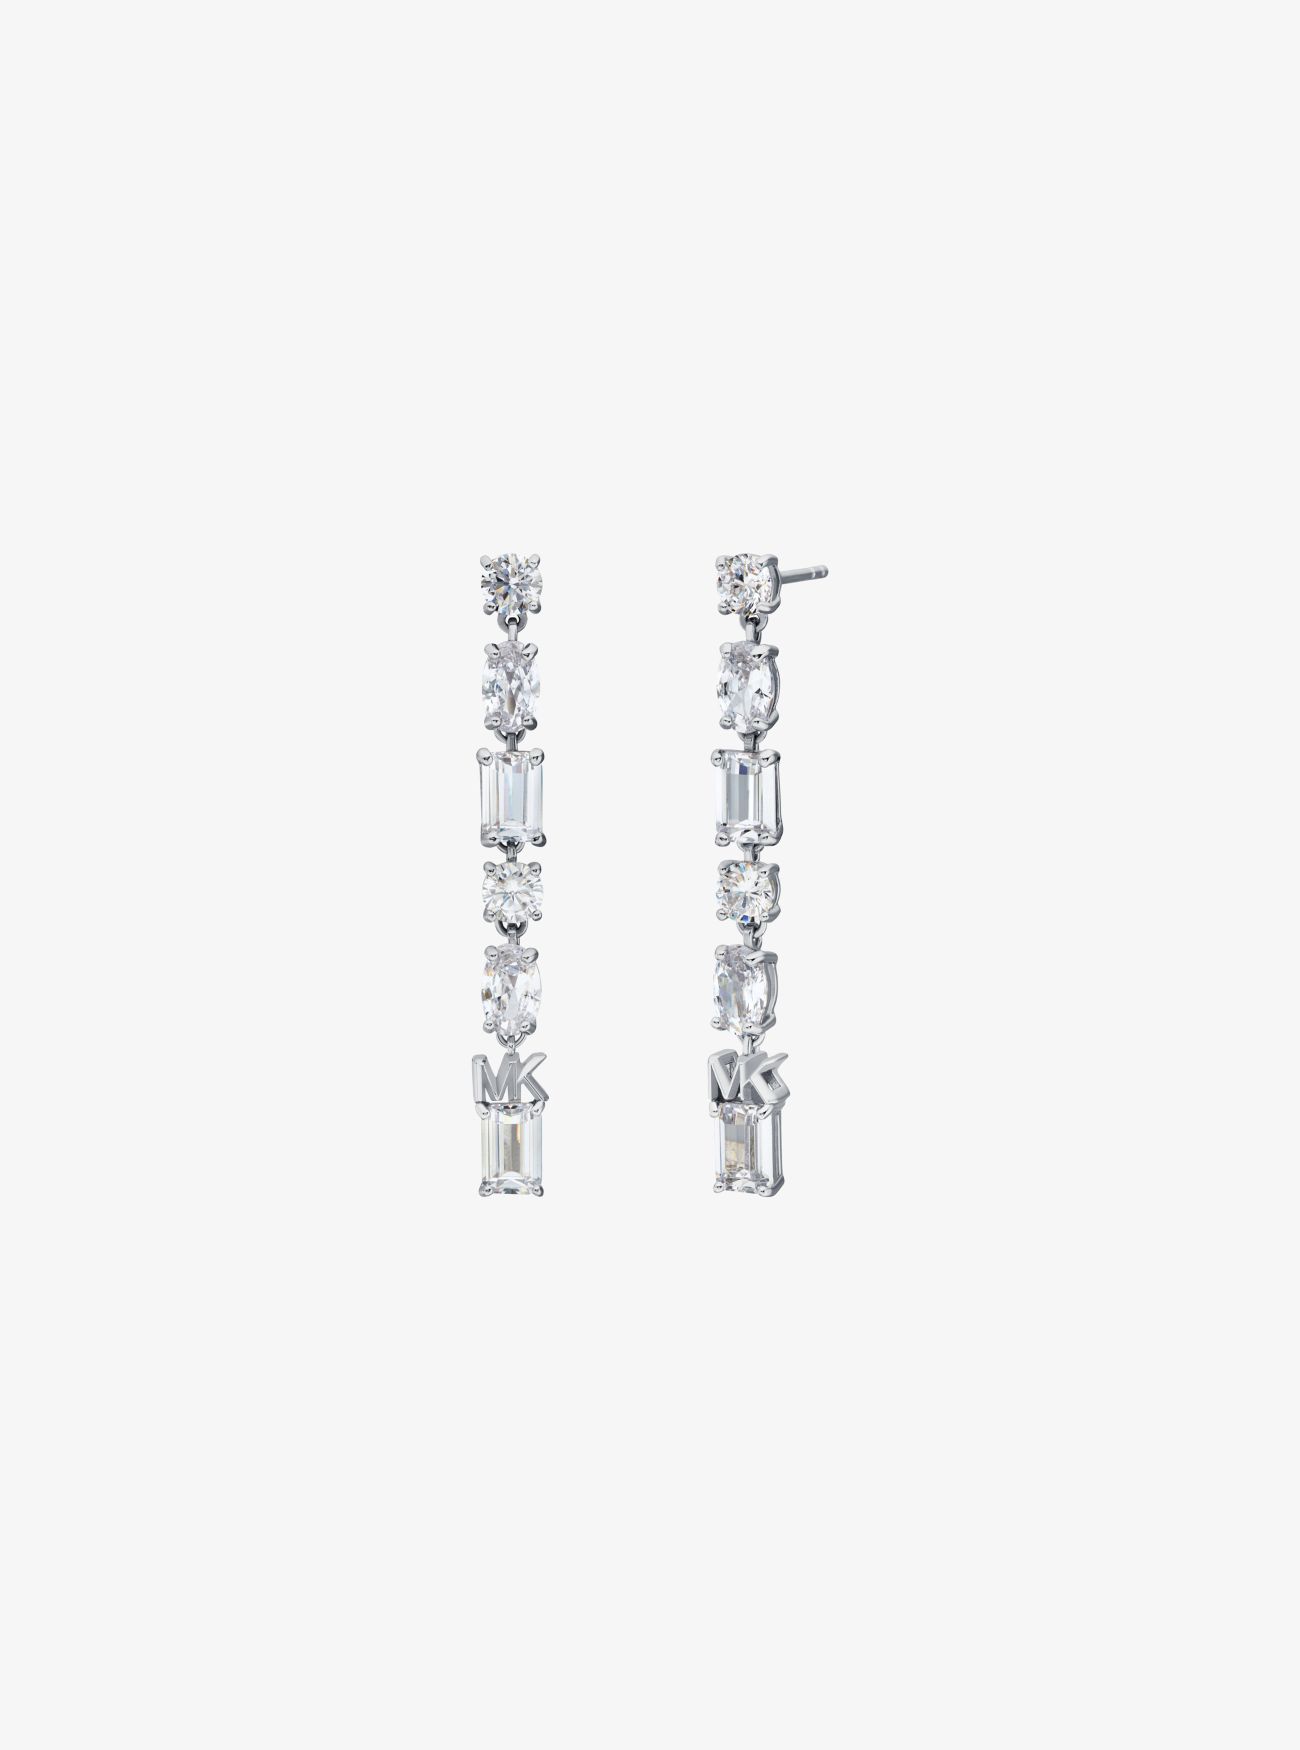 MK Precious Metal-Plated Sterling Silver Drop Earrings - Silver - Michael Kors